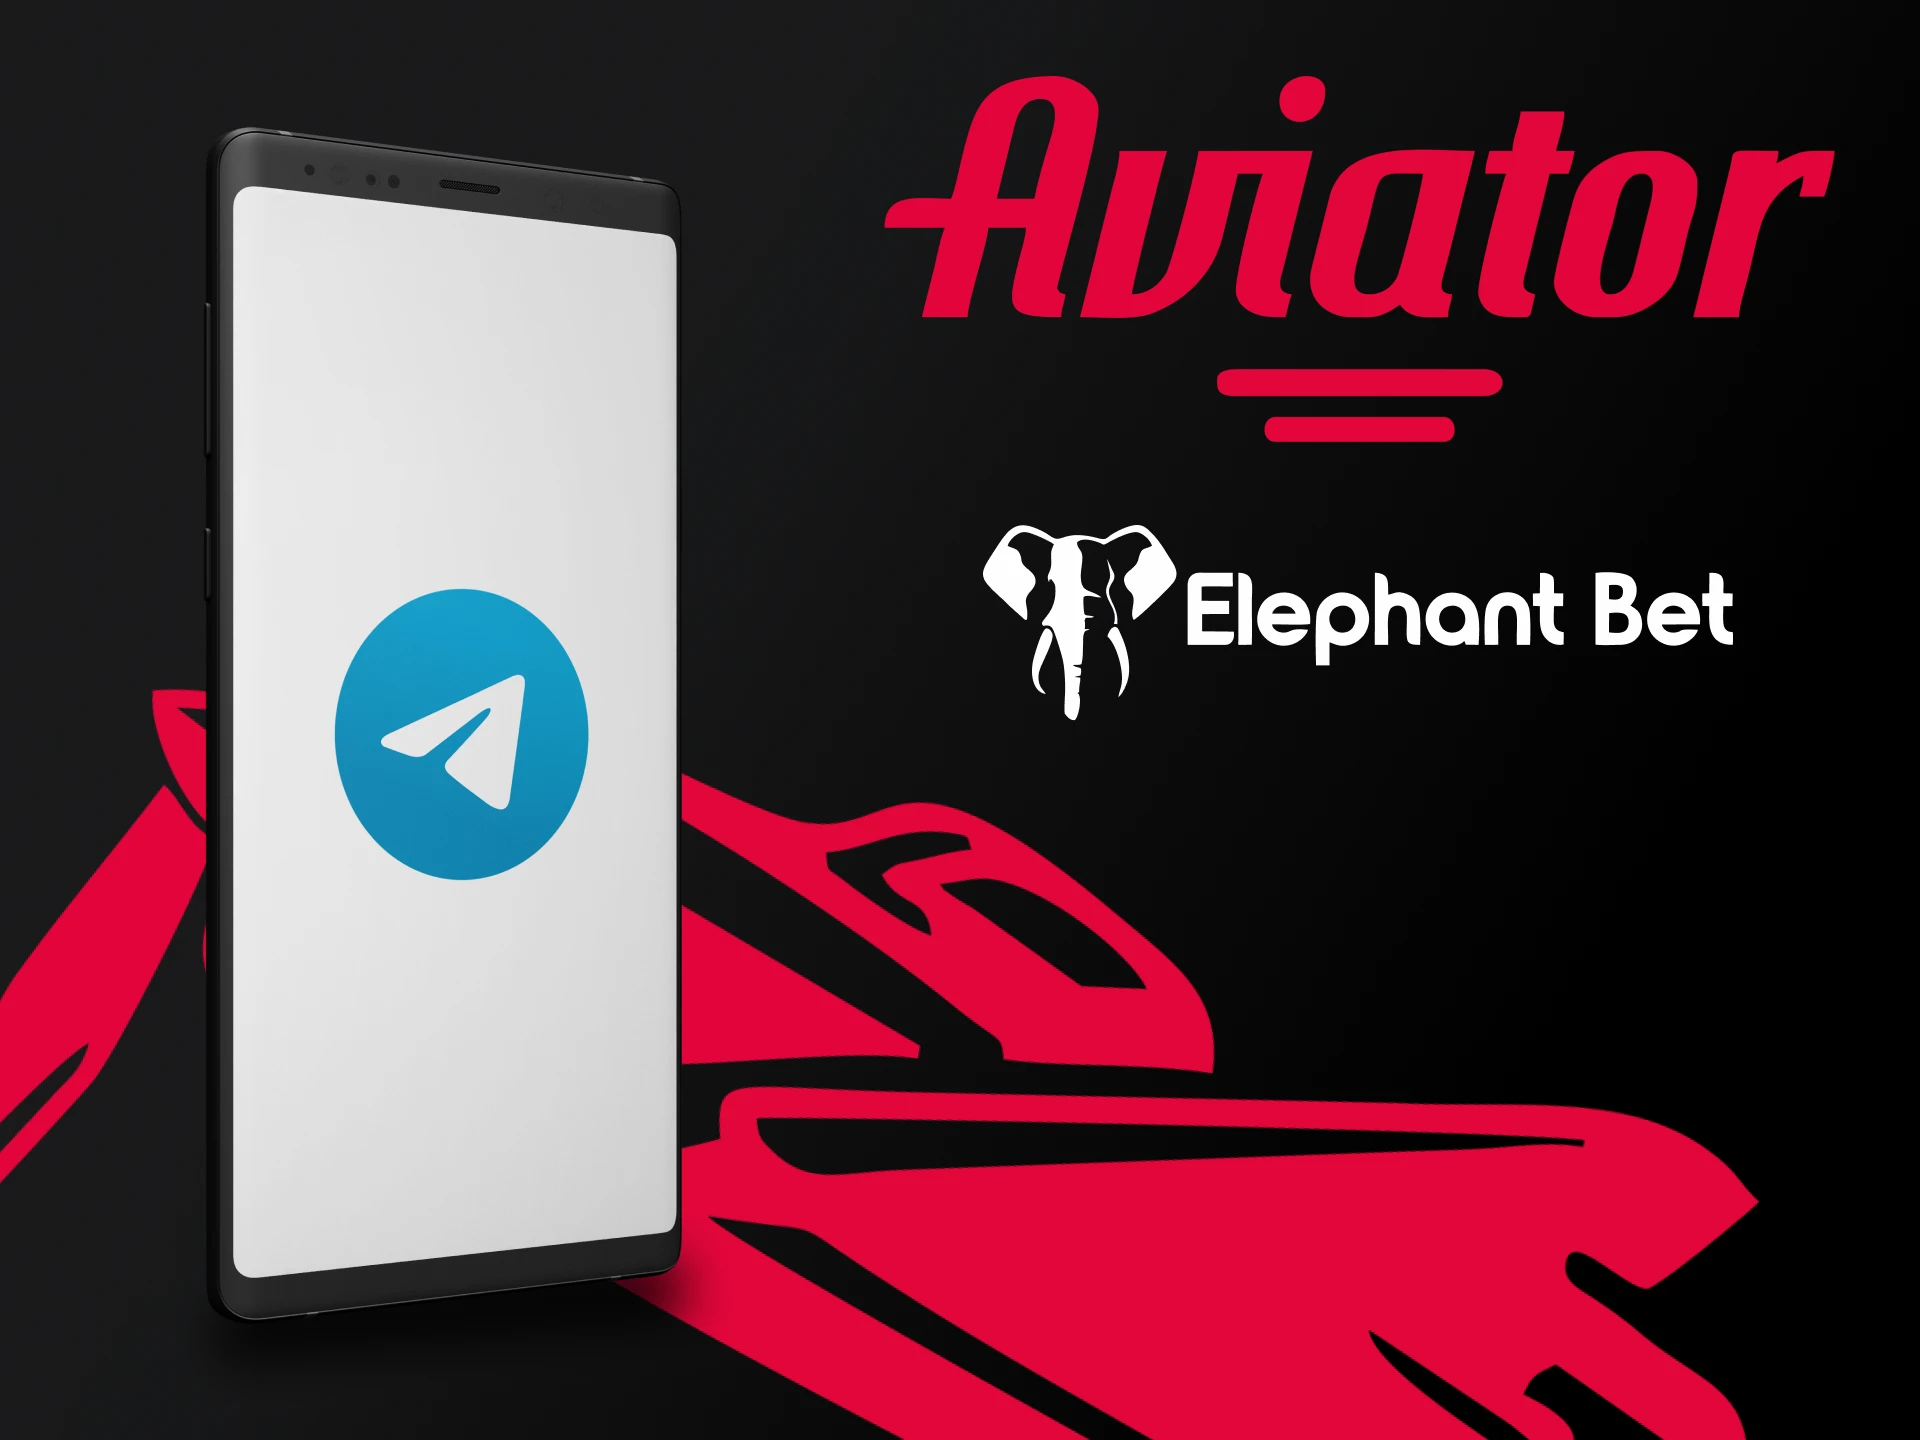 Descubra se é possível ganhar no Aviator com software de terceiros na Elephantbet.